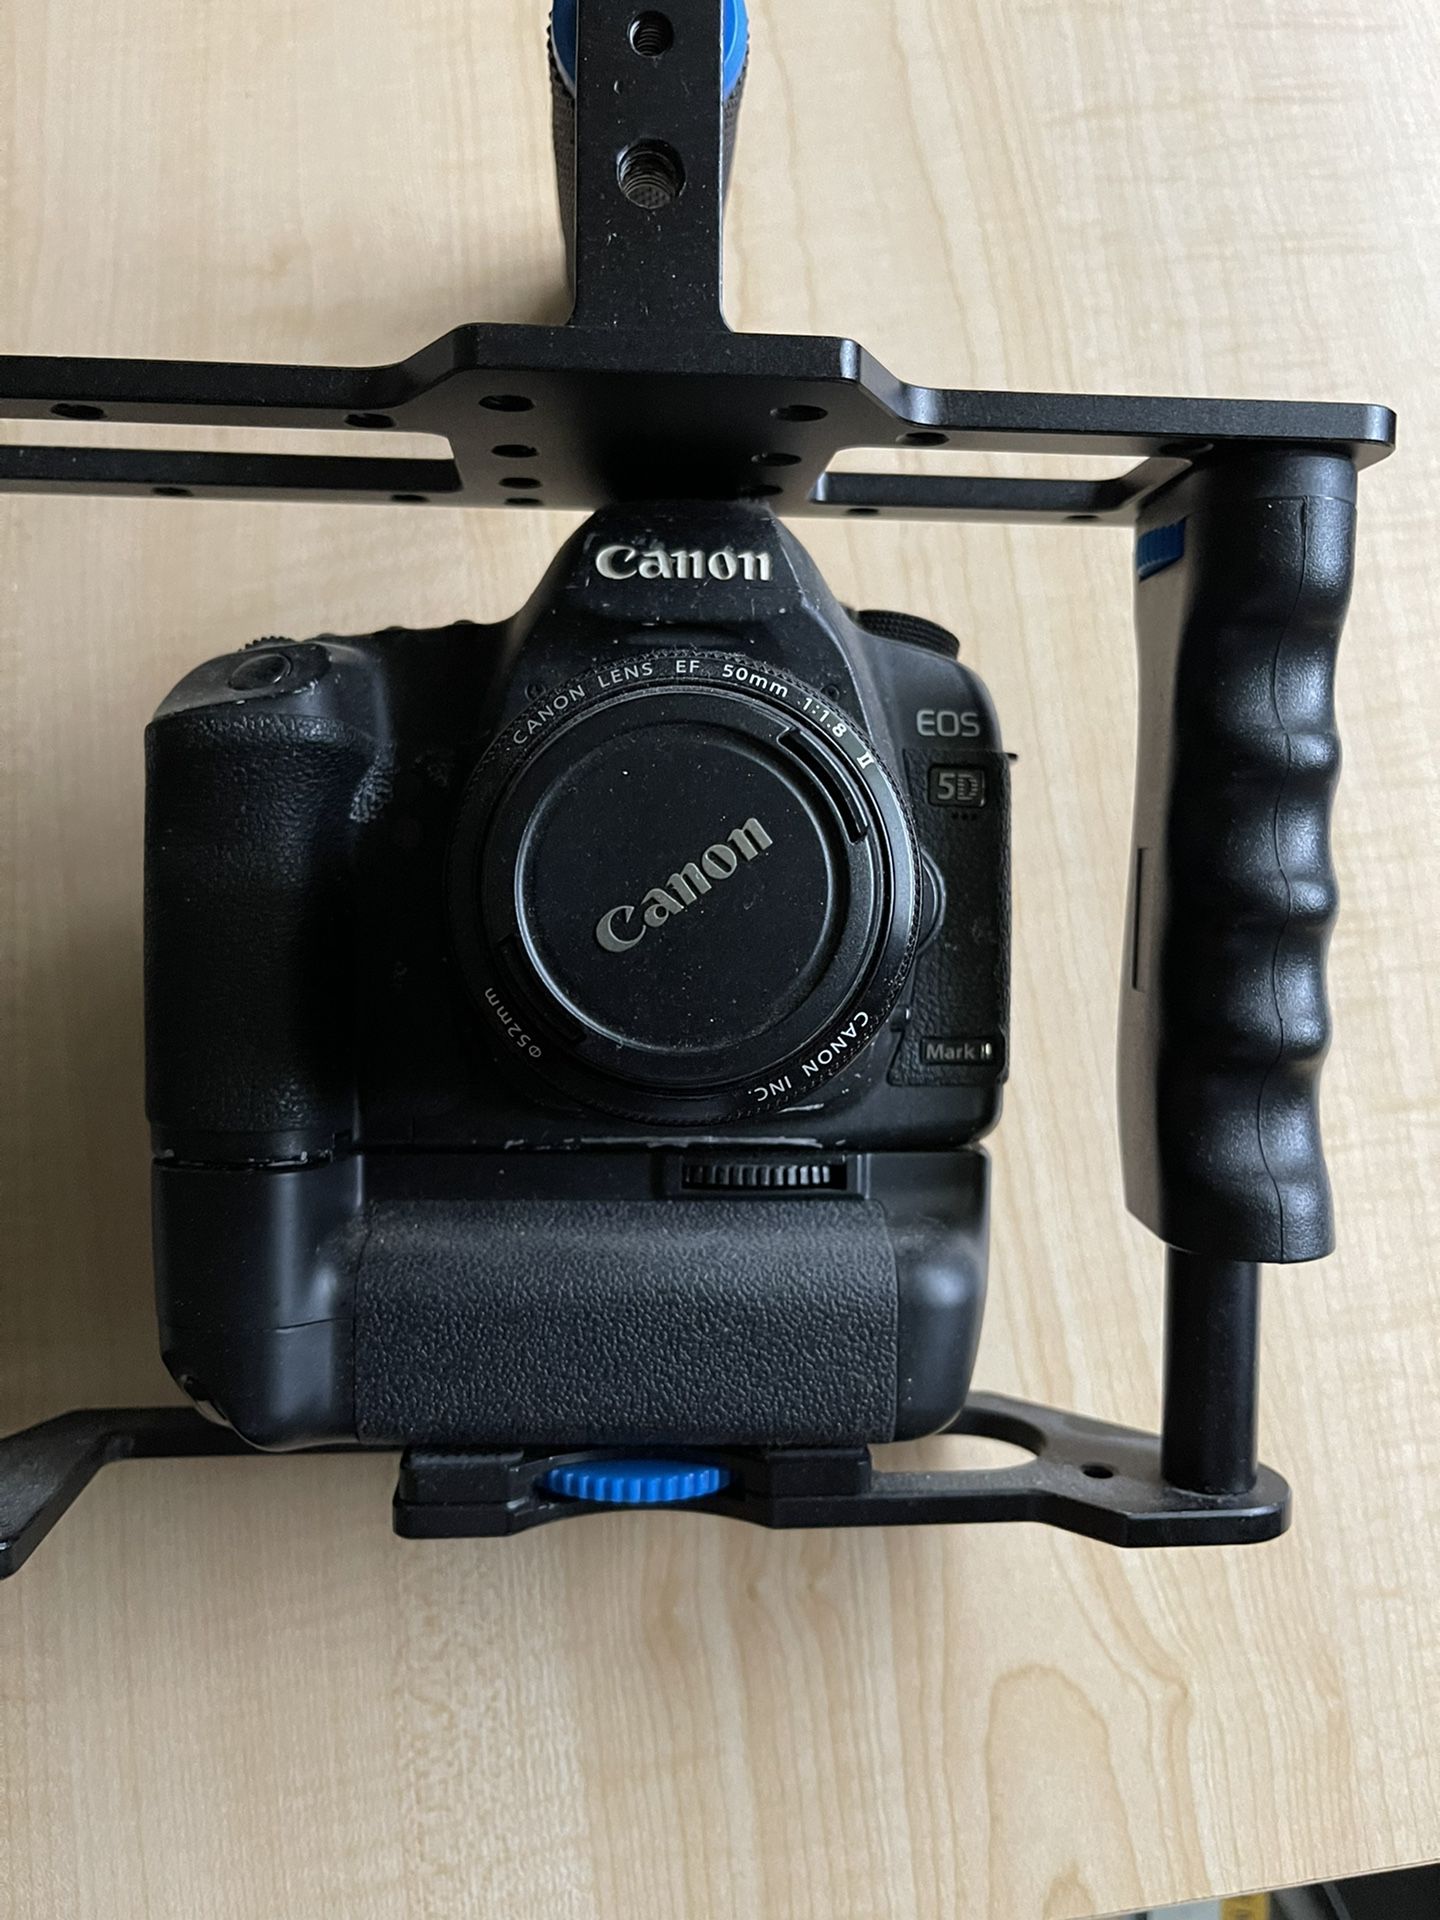 Canon 5D & T3i Rebel Cameras + Accessories 